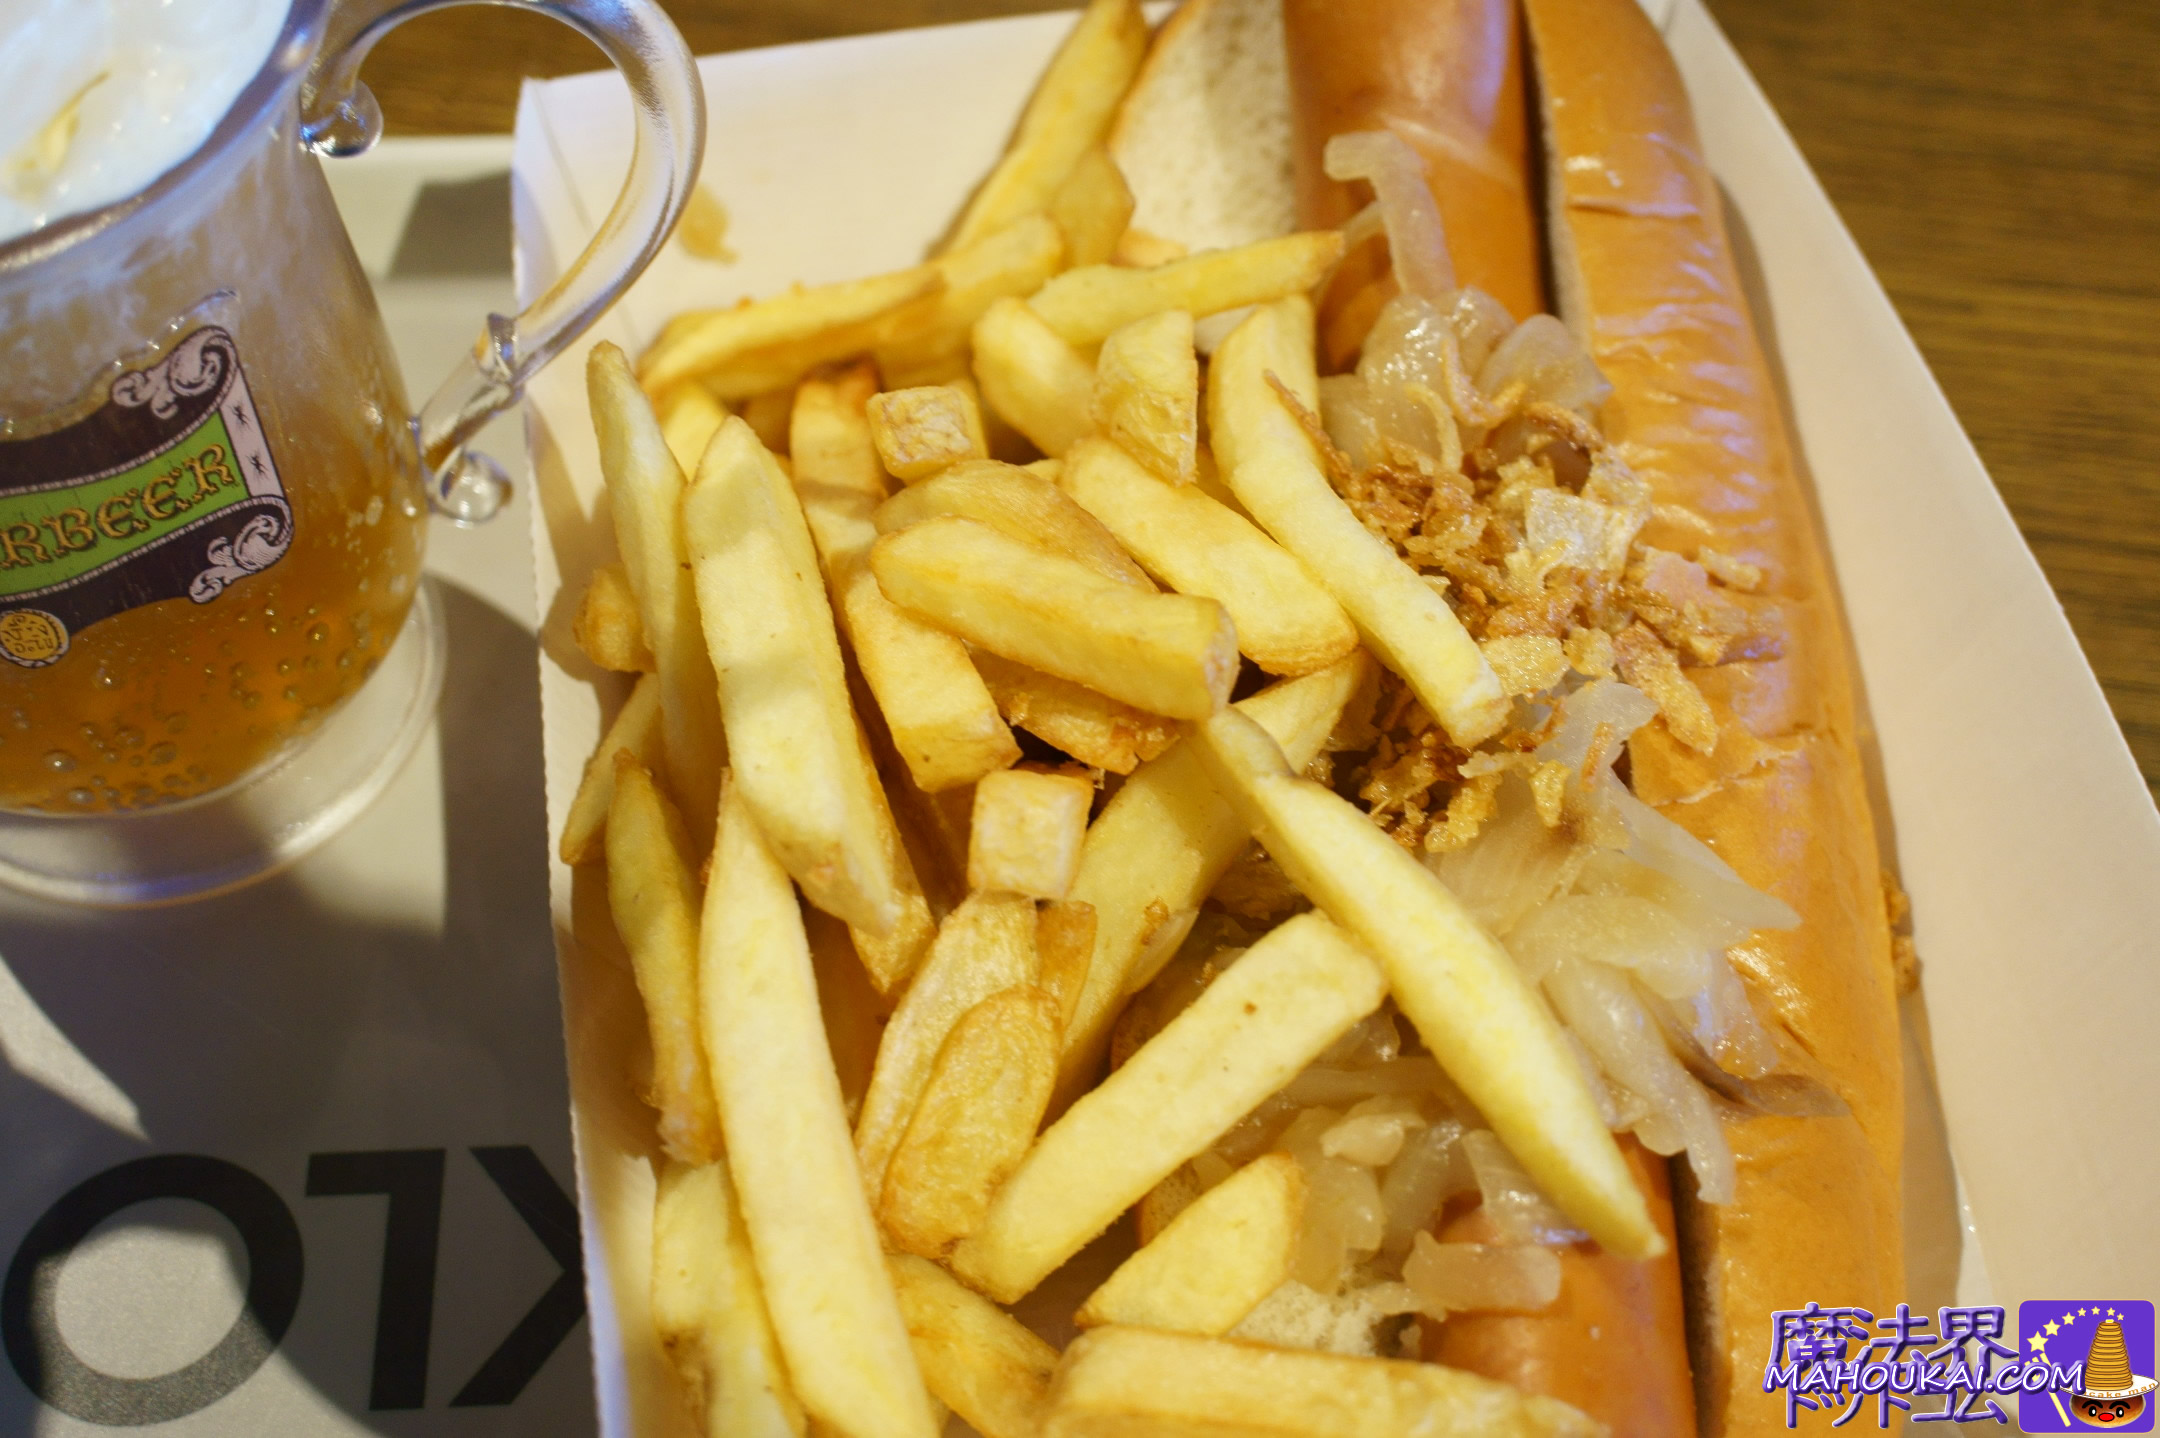 Classic Hotdog（クラシックホットドッグ）8.50£ カフェ＆レストラン THE BACKLOT CAFE（バックロット・カフェ） ハリー・ポッター スタジオツアー1日目の食事